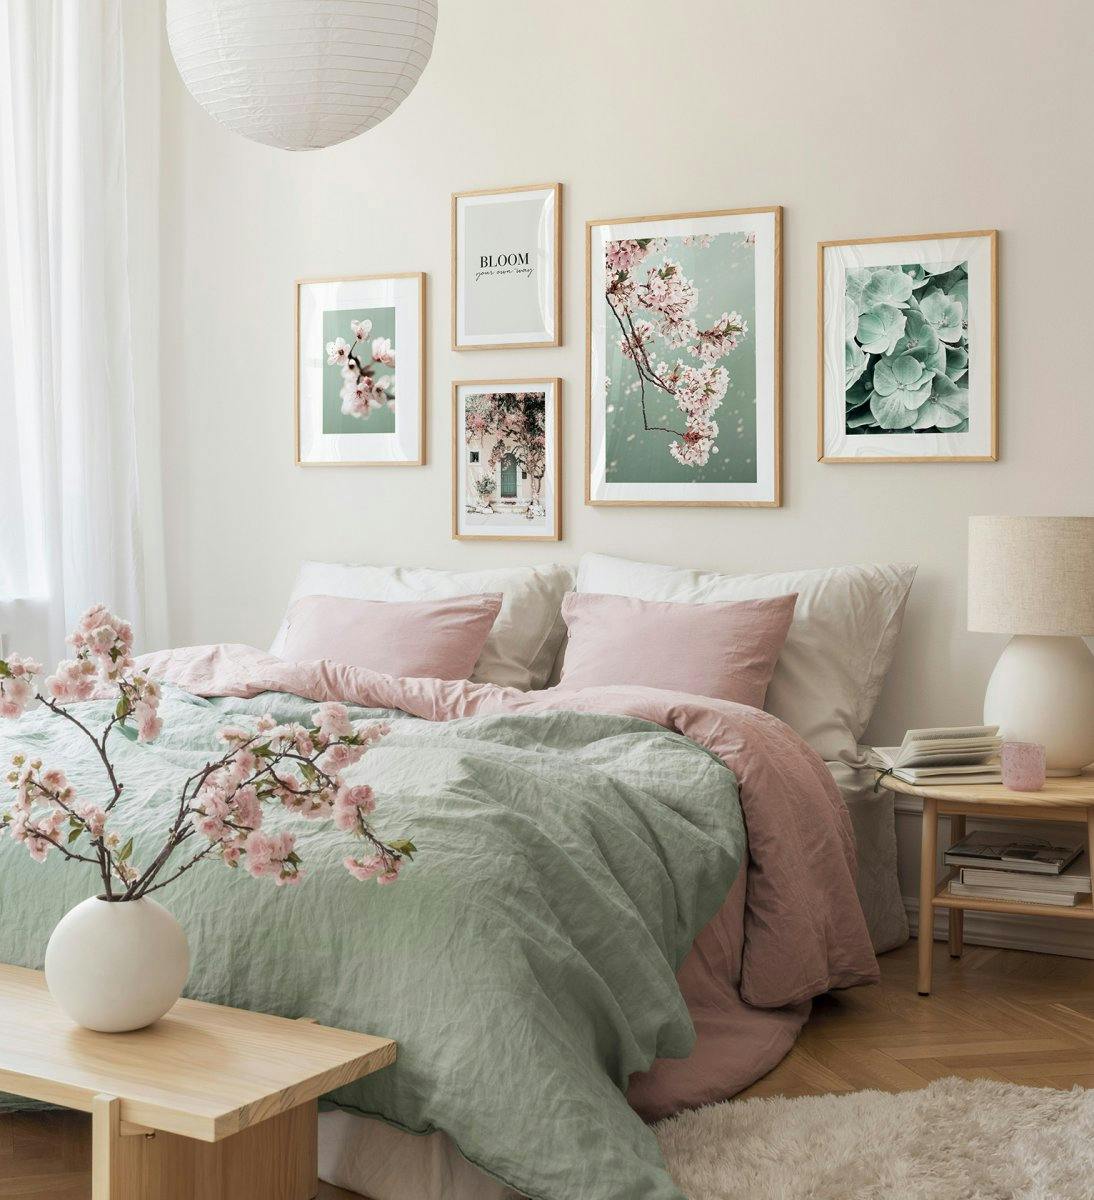 오크 프레임과 초록색의 네츄럴 아트가 어우러져 차분한 분위기의 침실용 갤러리월